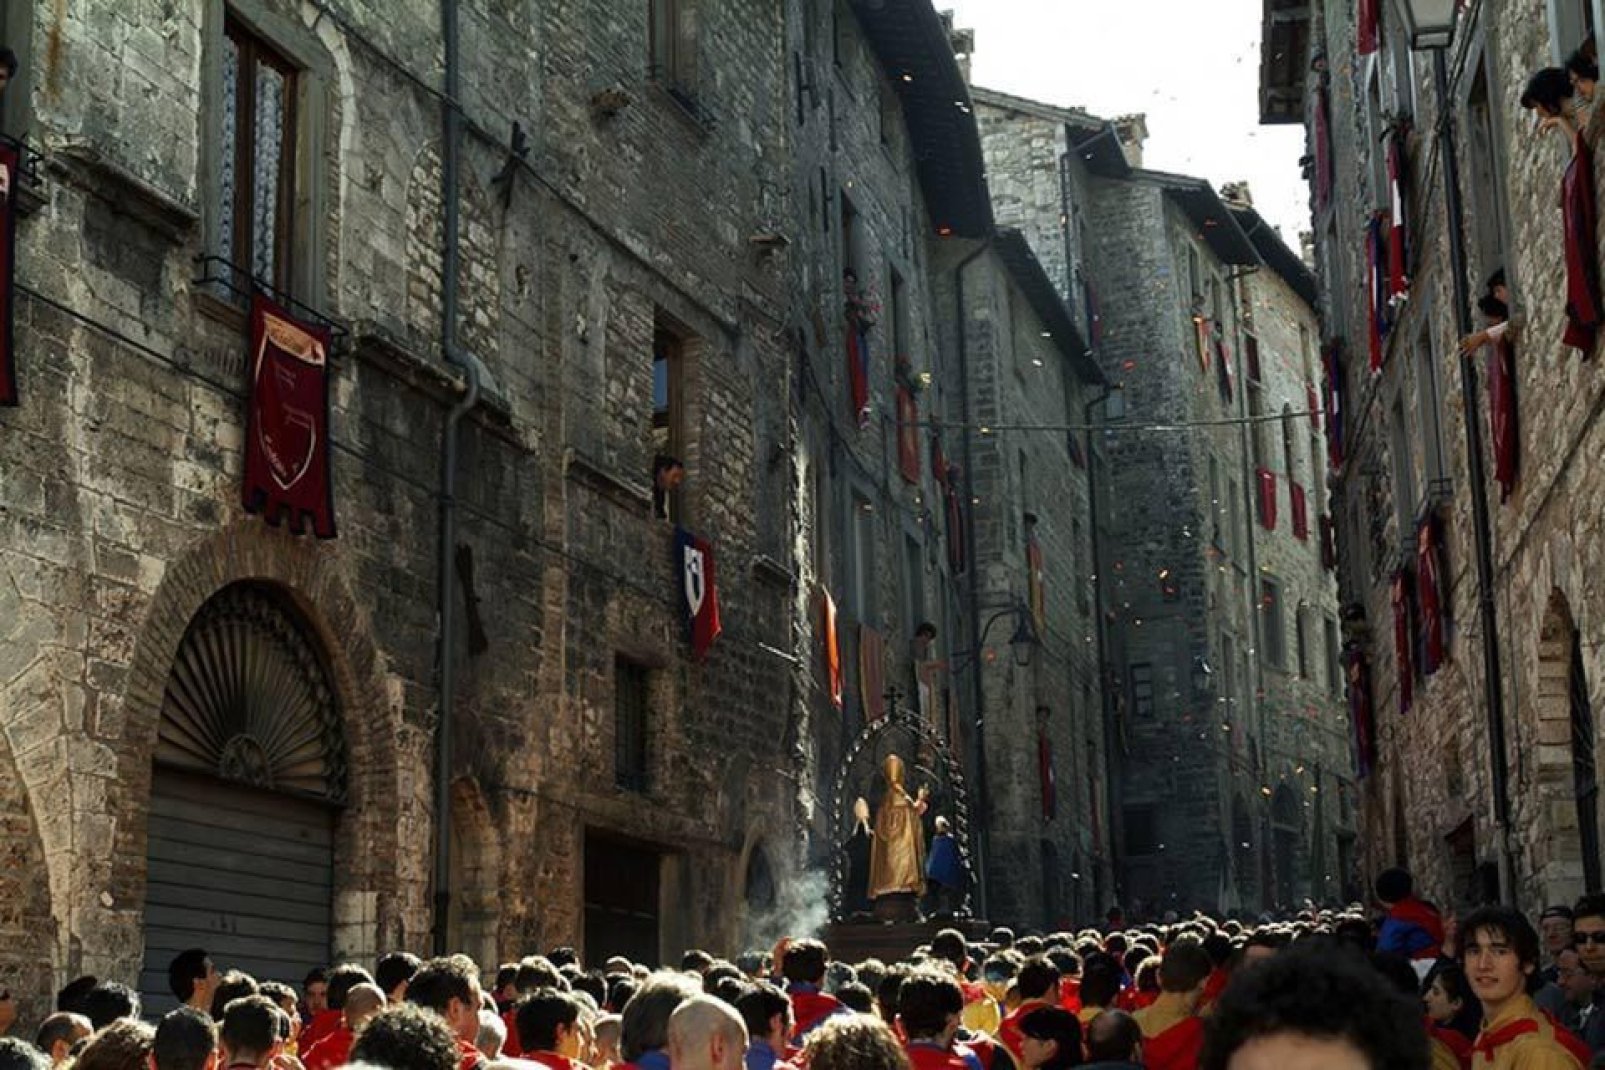 Festa dei Ceri findet am 15. Mai in Gubbio statt. Es handelt sich um ein traditionelles Fest zu Ehren des Hl. Ubaldo Baldassini, Bischof und Schutzherr der Stadt.